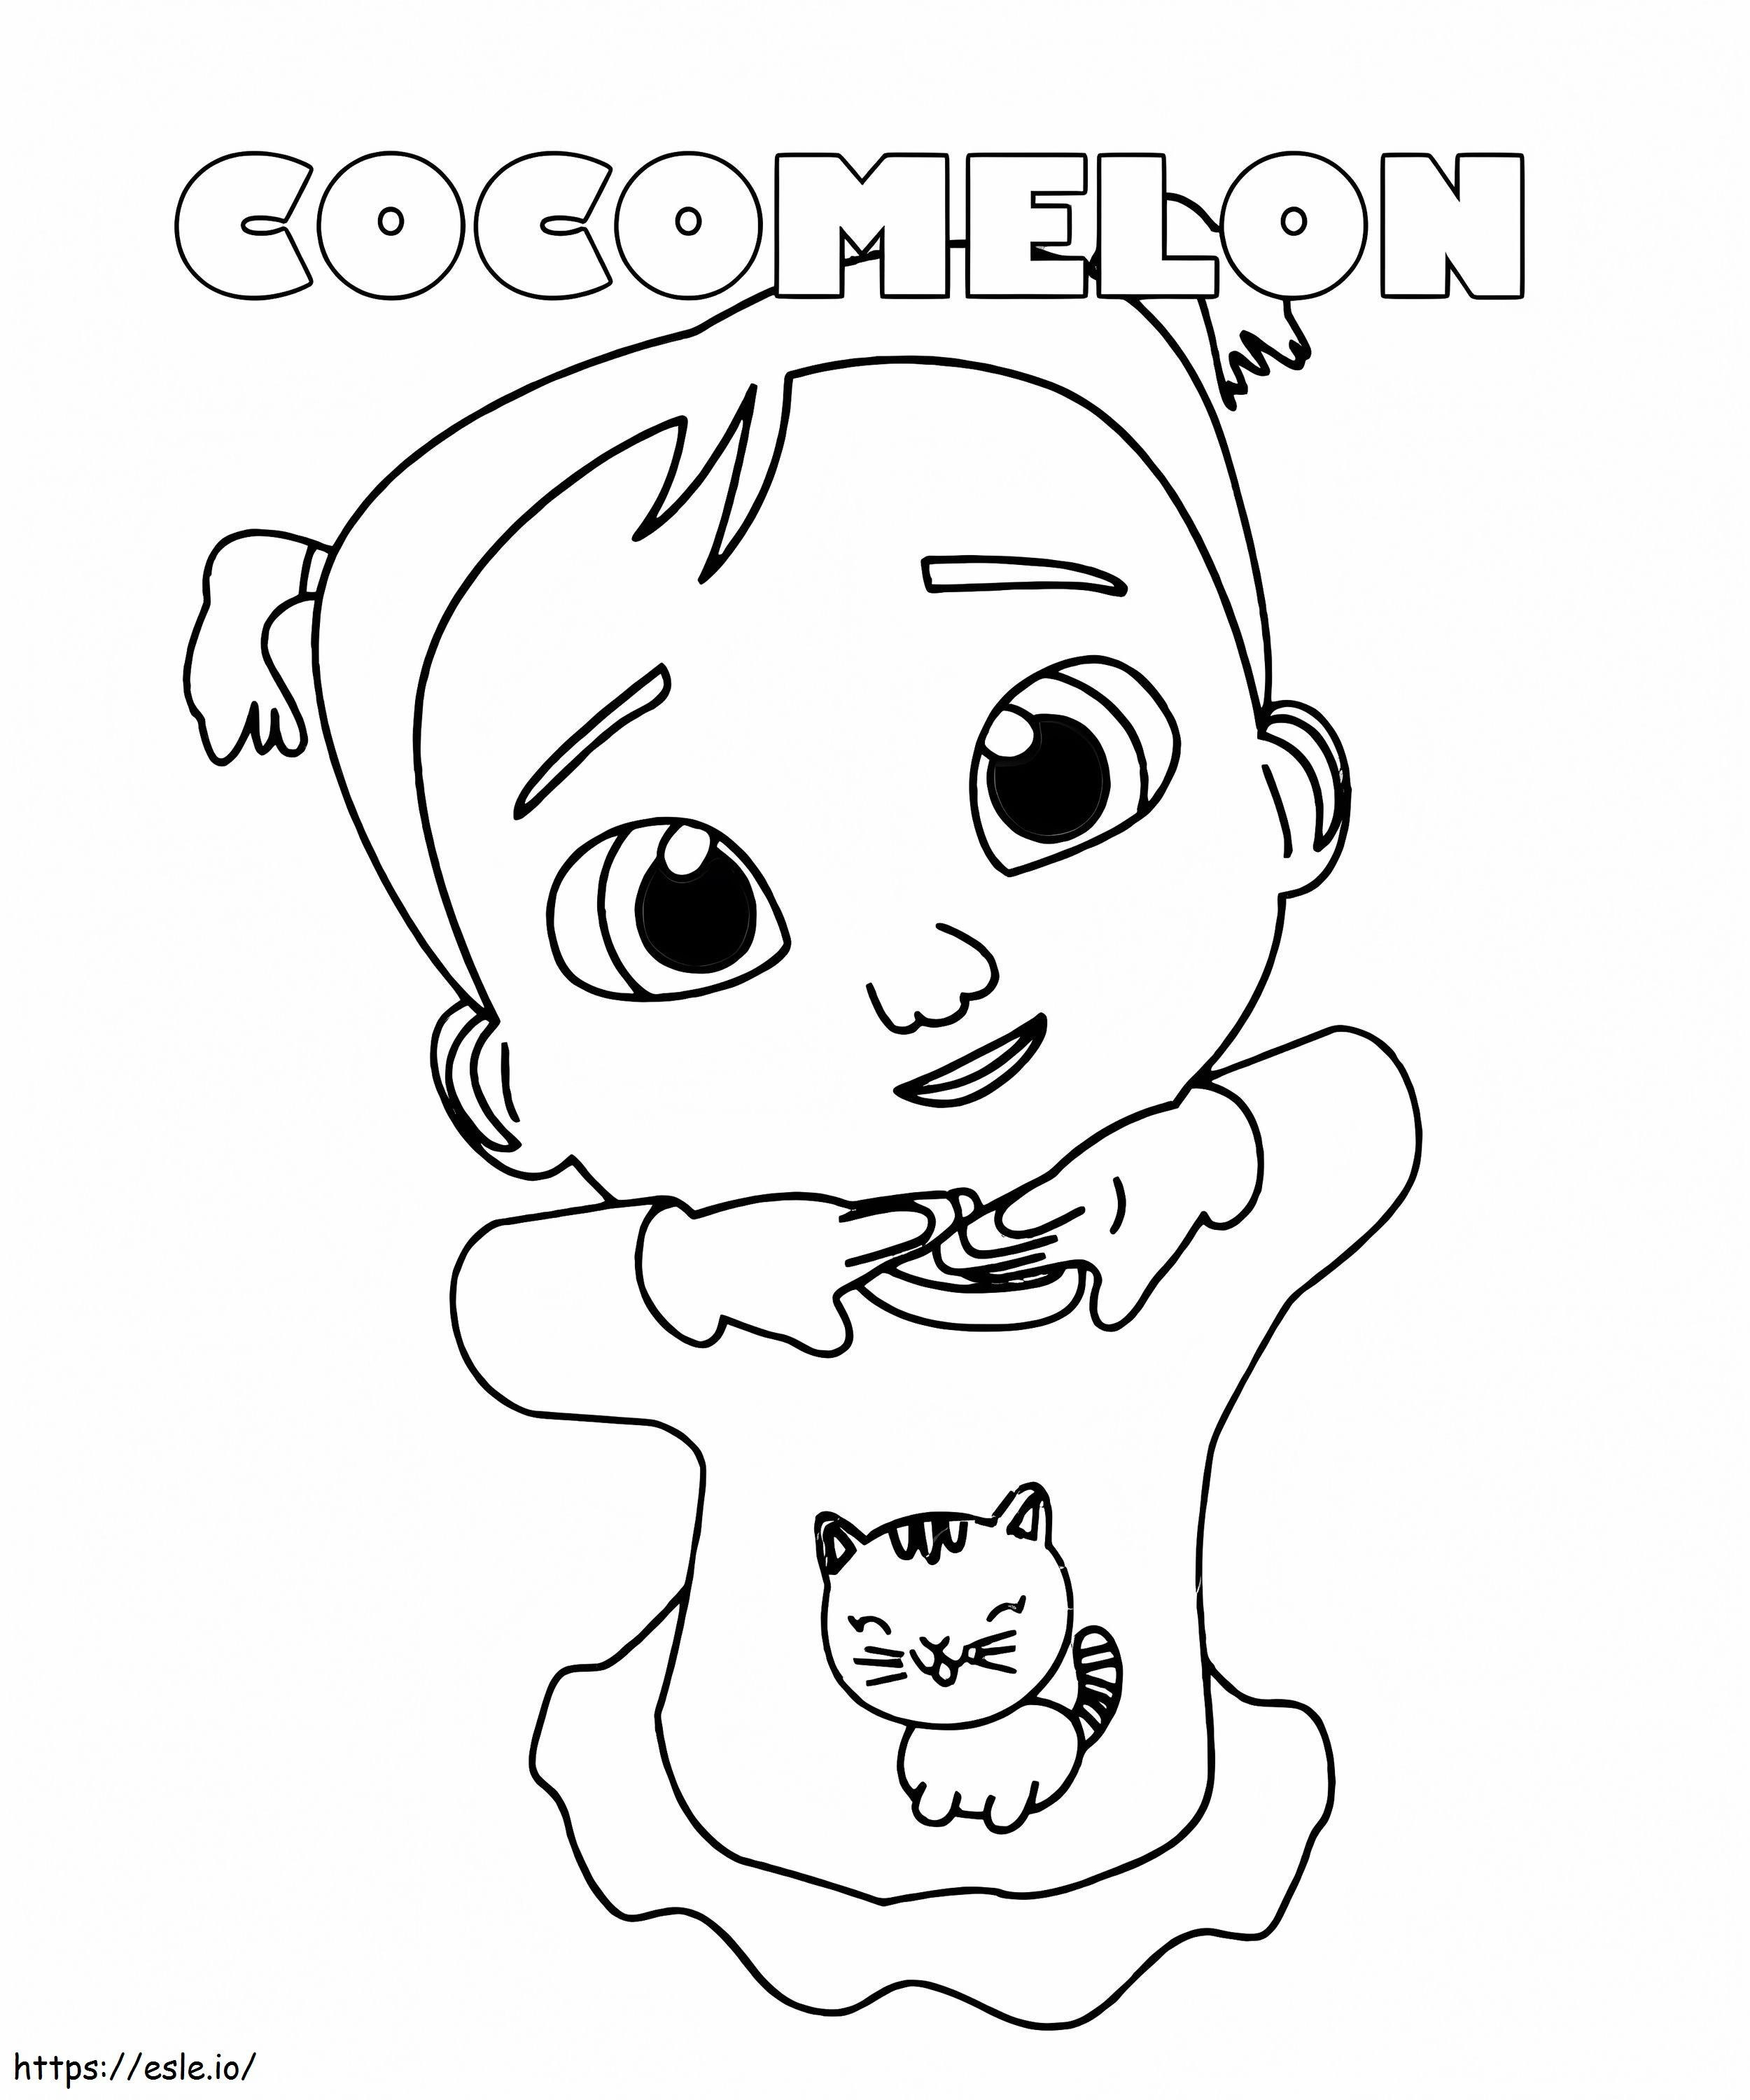 Cocomelon Chickpea coloring page